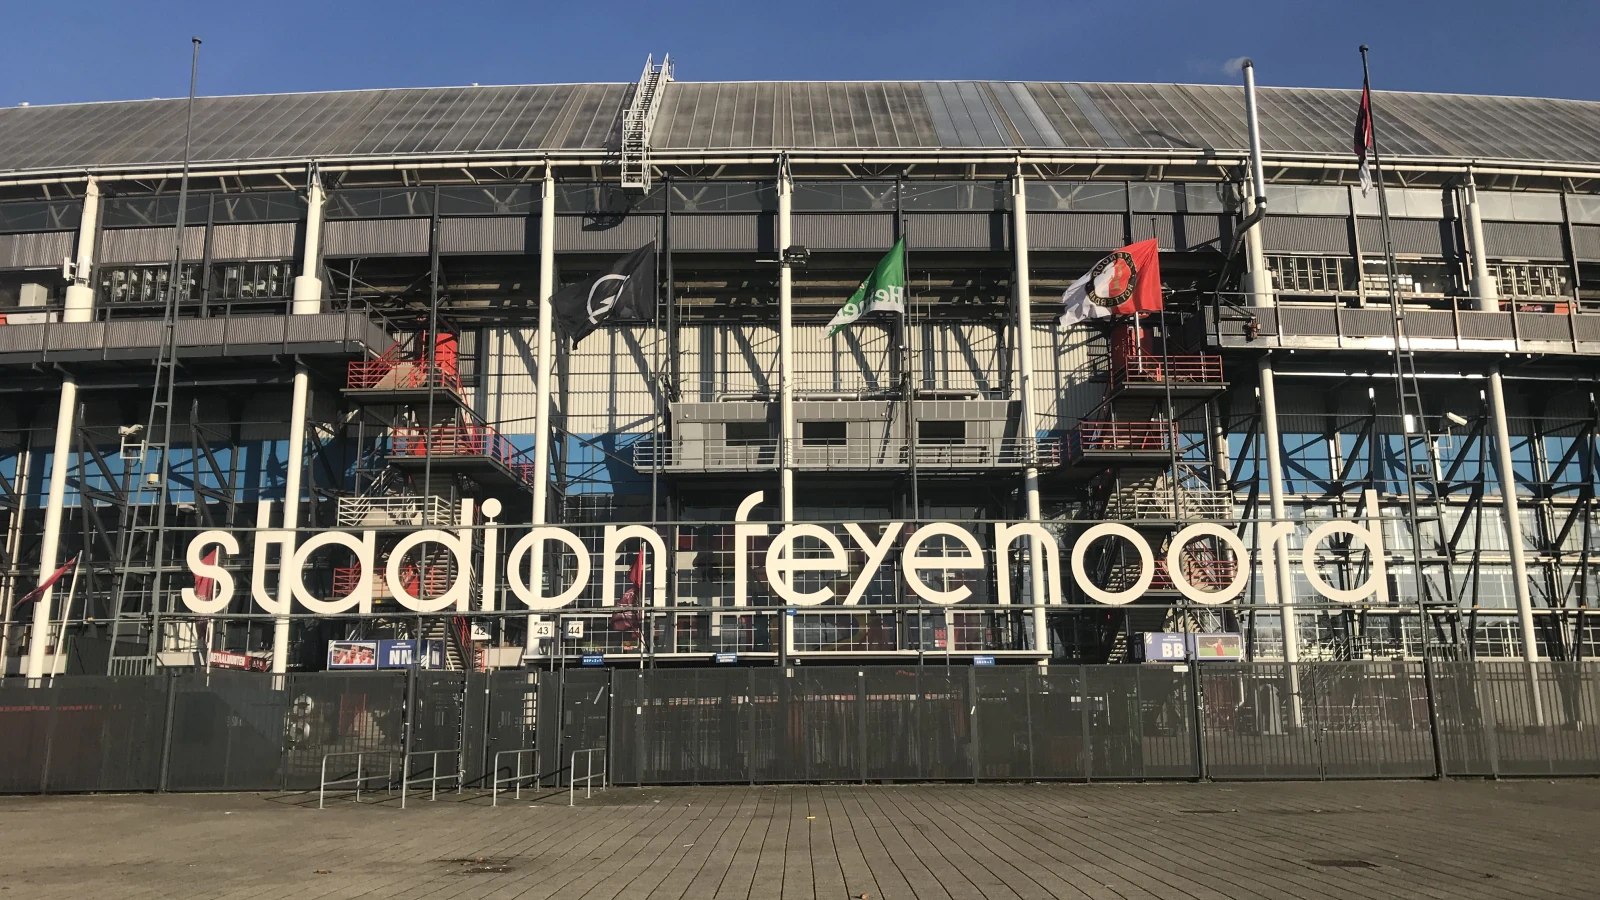 Wedstrijd tussen Feyenoord en BSC Young Boys live op 'open net'